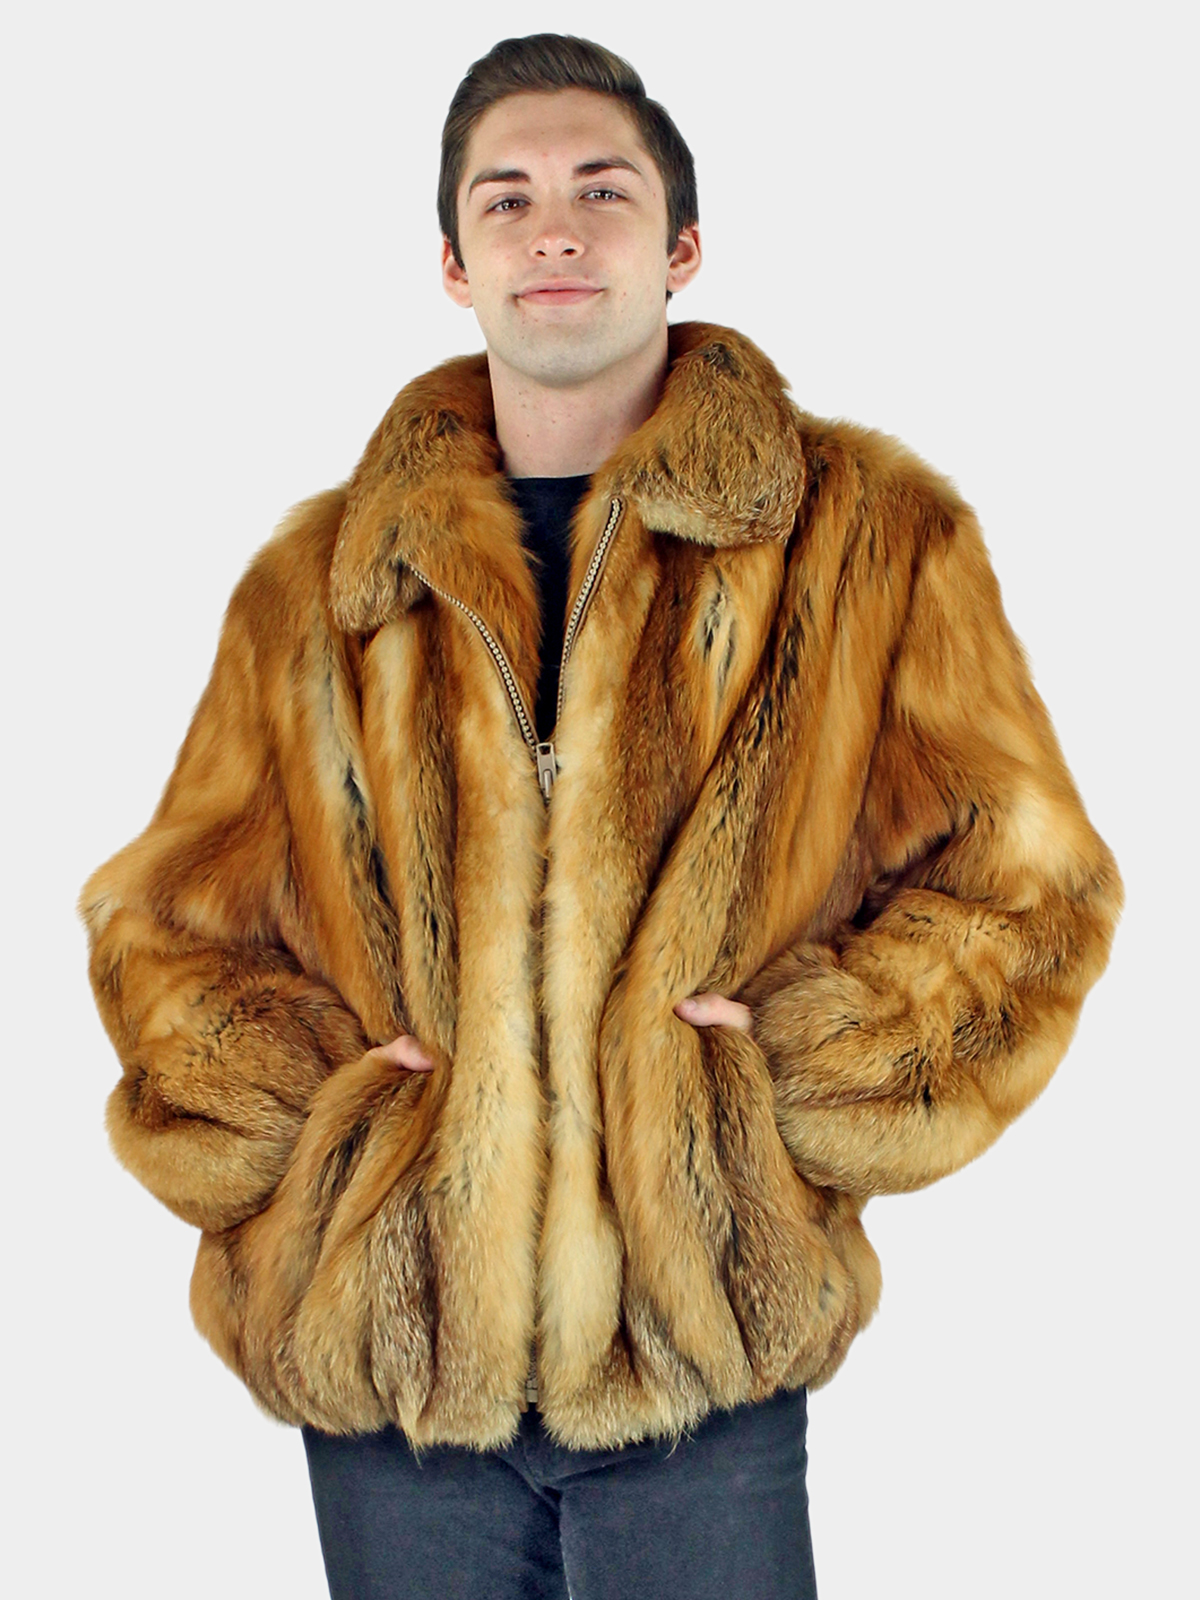 Mens mink fur coat and jacket